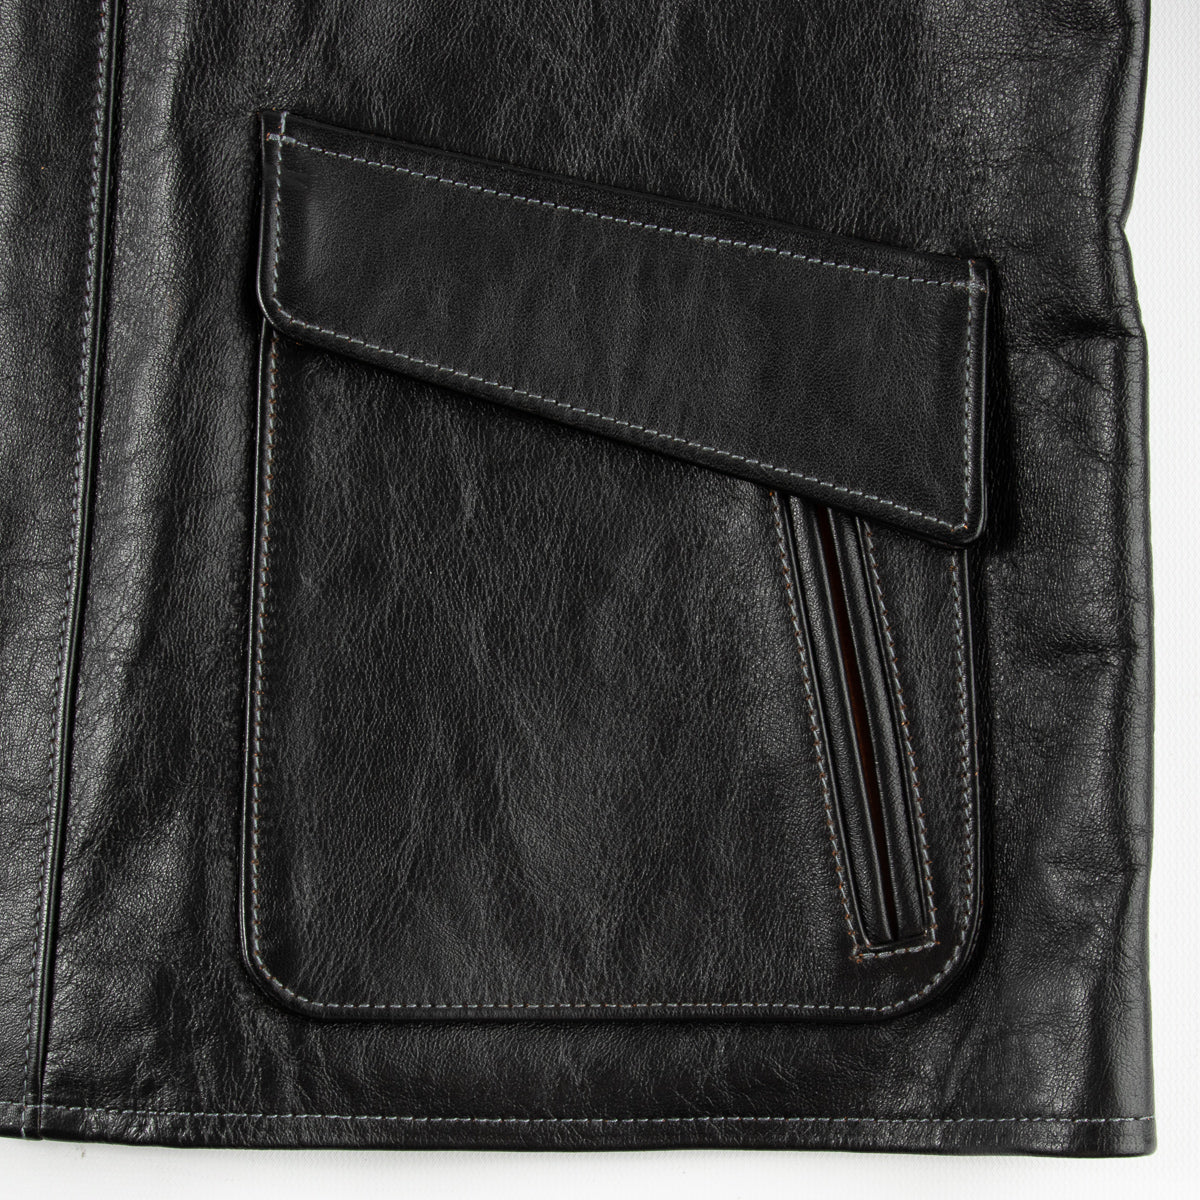 The Real McCoy's Dead Wood Leather Jacket - Black – Standard & Strange